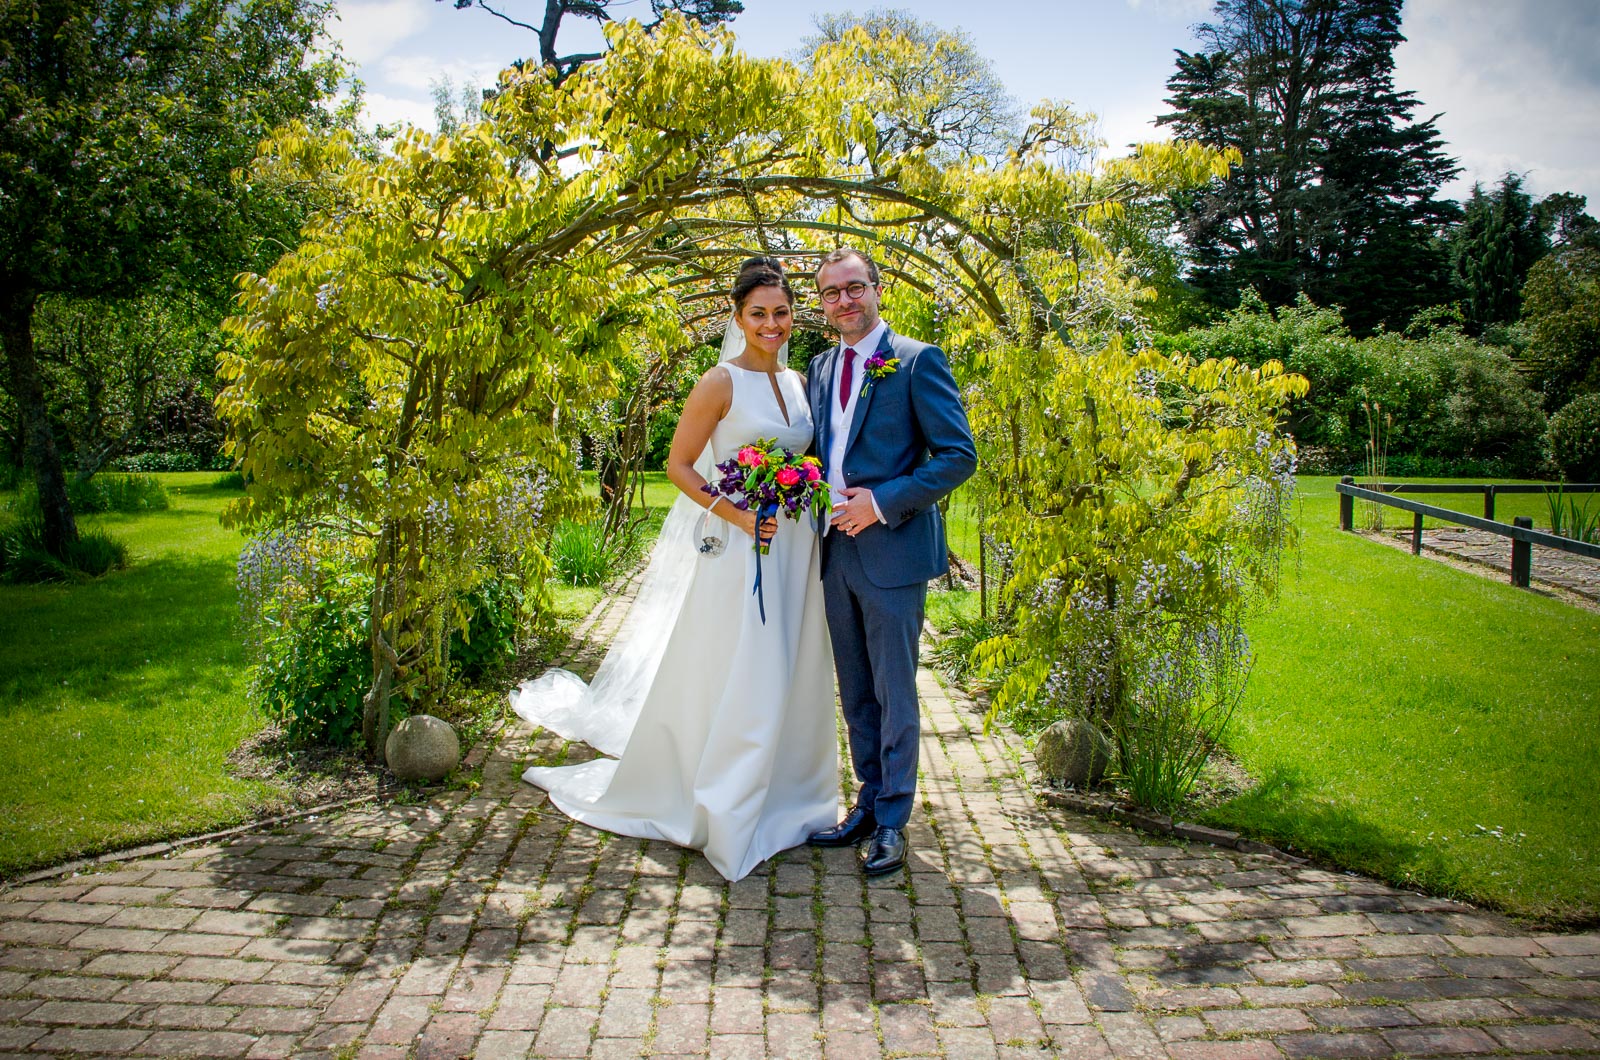 Tash and Raf pose in the gardens in Borde Hill, Haywards Heath under a leafy arch after their wedding.